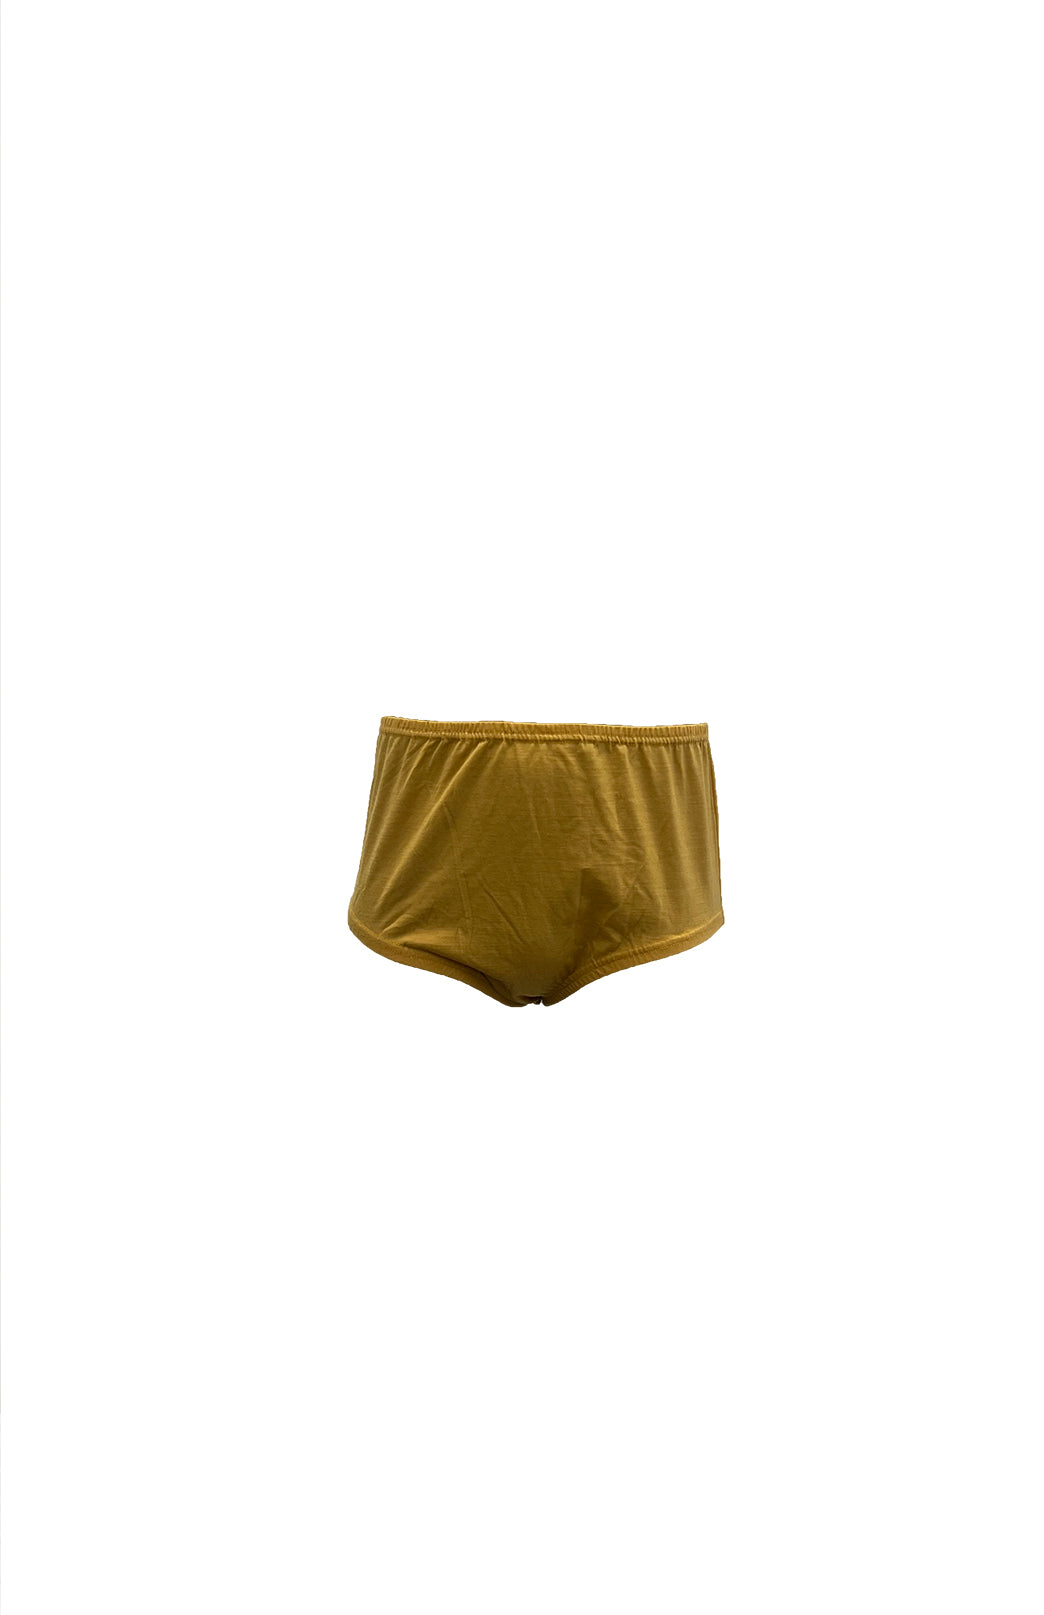 Underwear women: short long pure merinowool warm and sweet